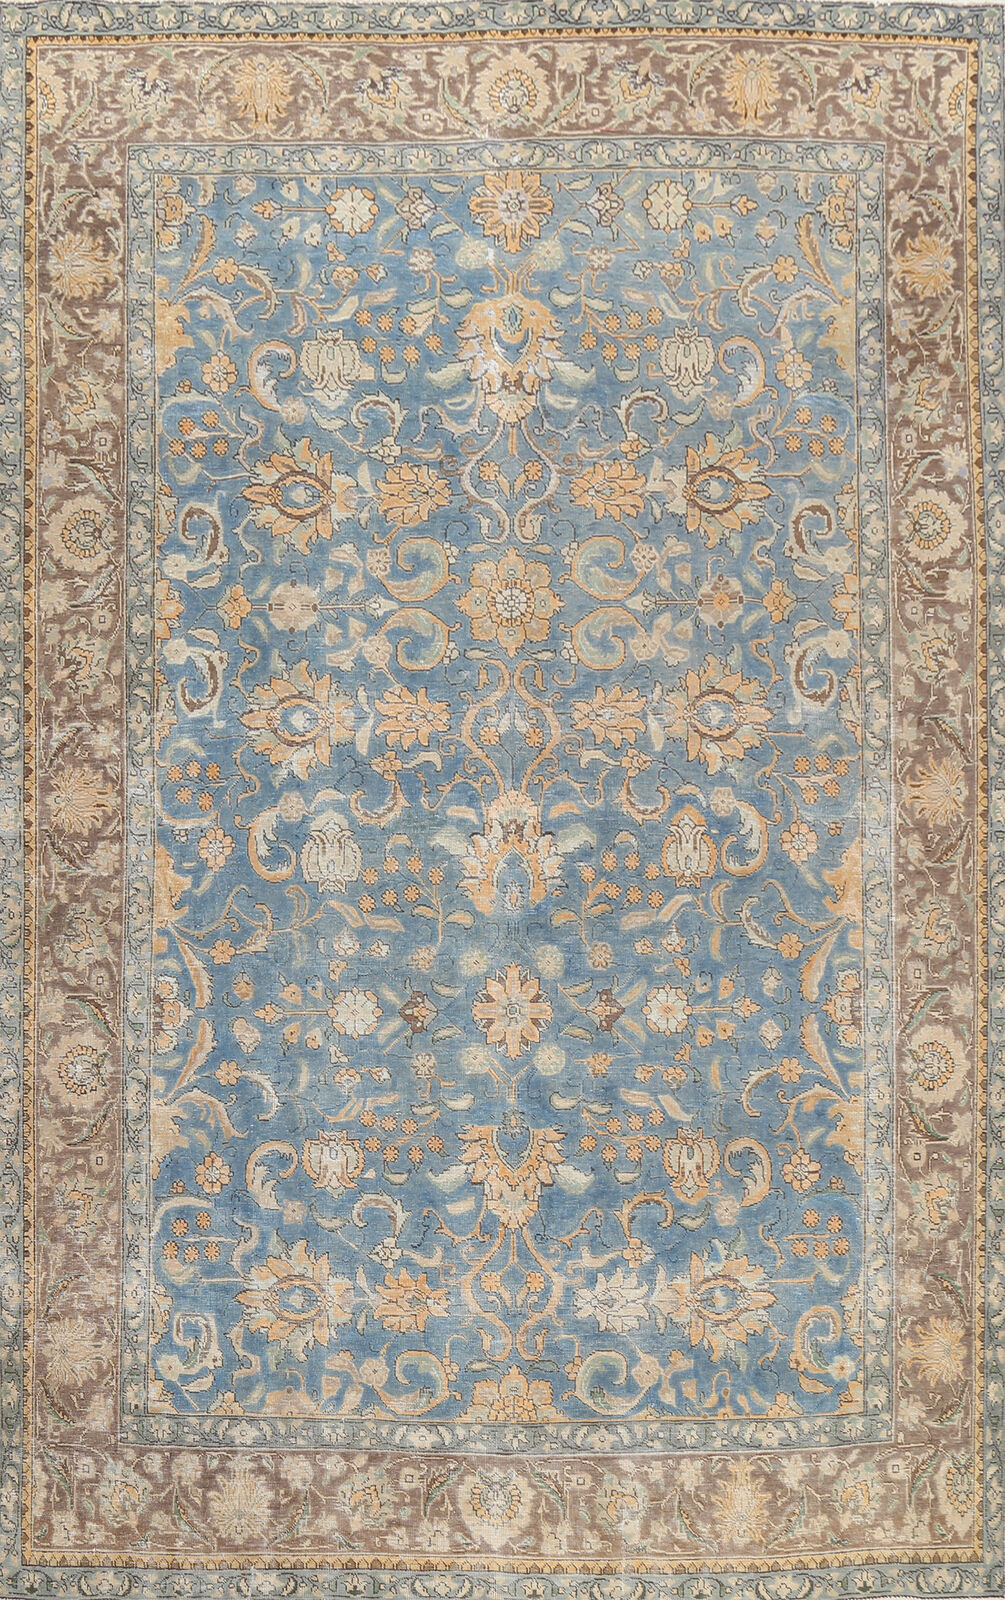 Vintage Over-Dyed Light Blue Handmade Tebriz Living Room Area Rug 8x11 Carpet